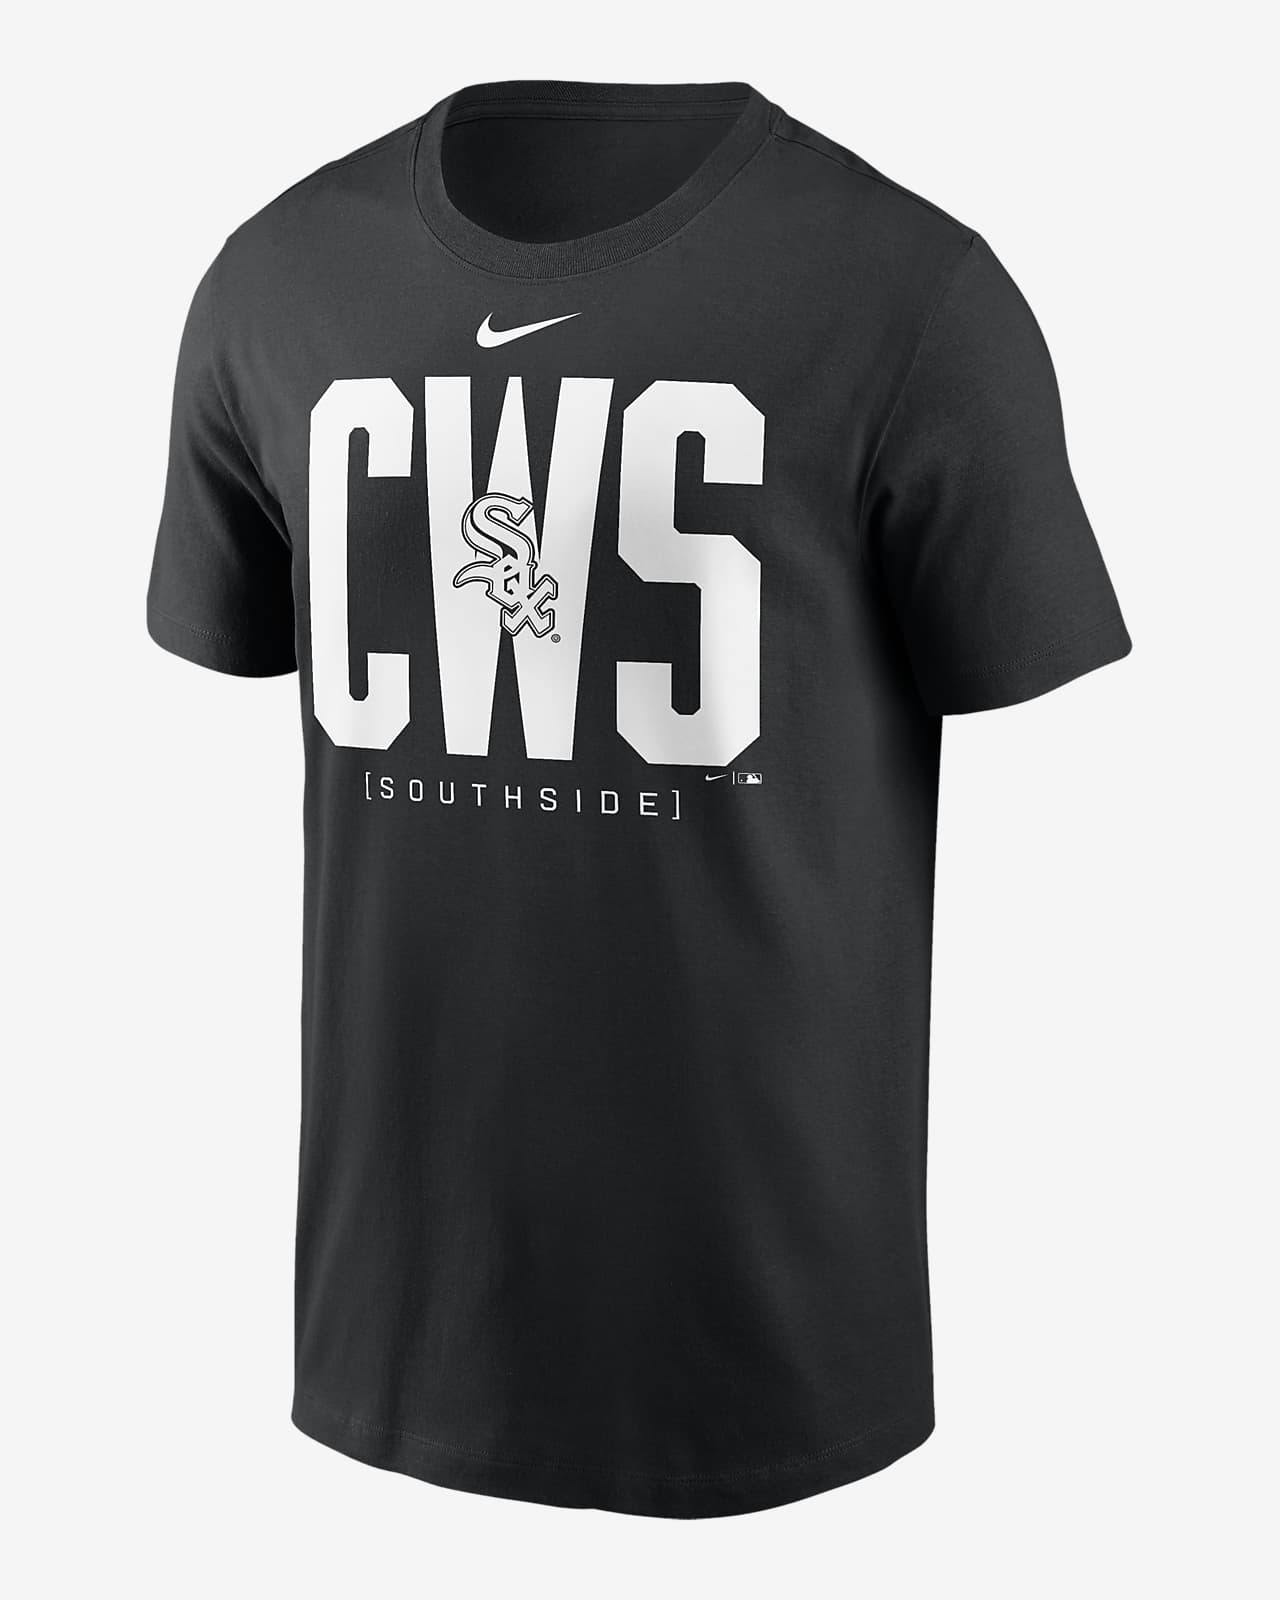 Chicago White Sox Team Scoreboard Men's Nike MLB T-Shirt